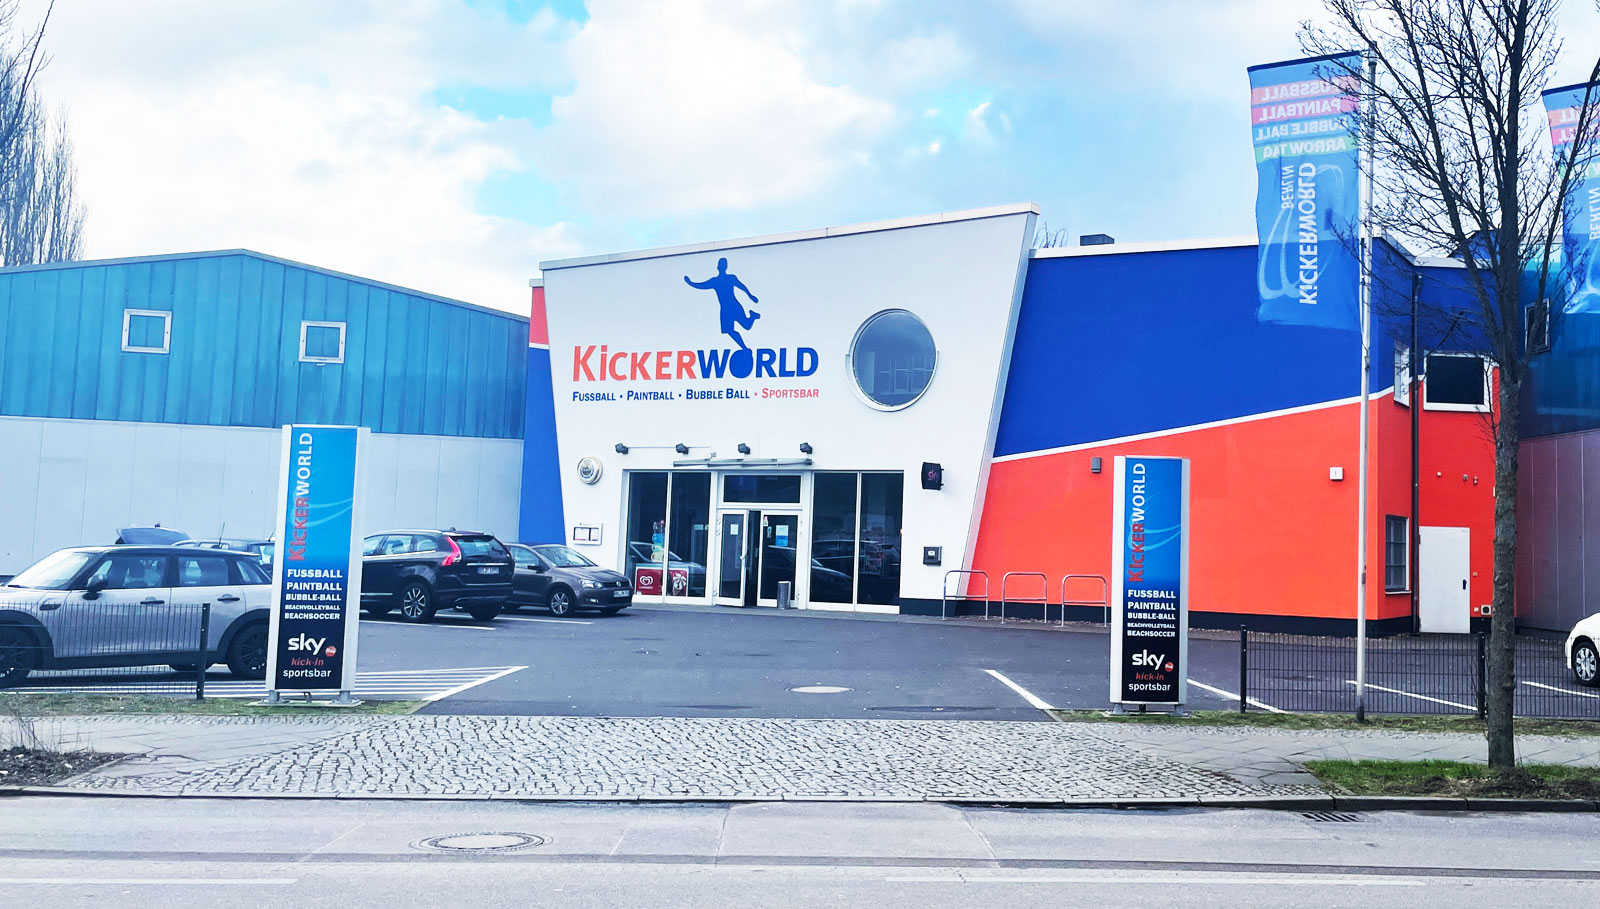 Kickerworld Berlin-Spandau